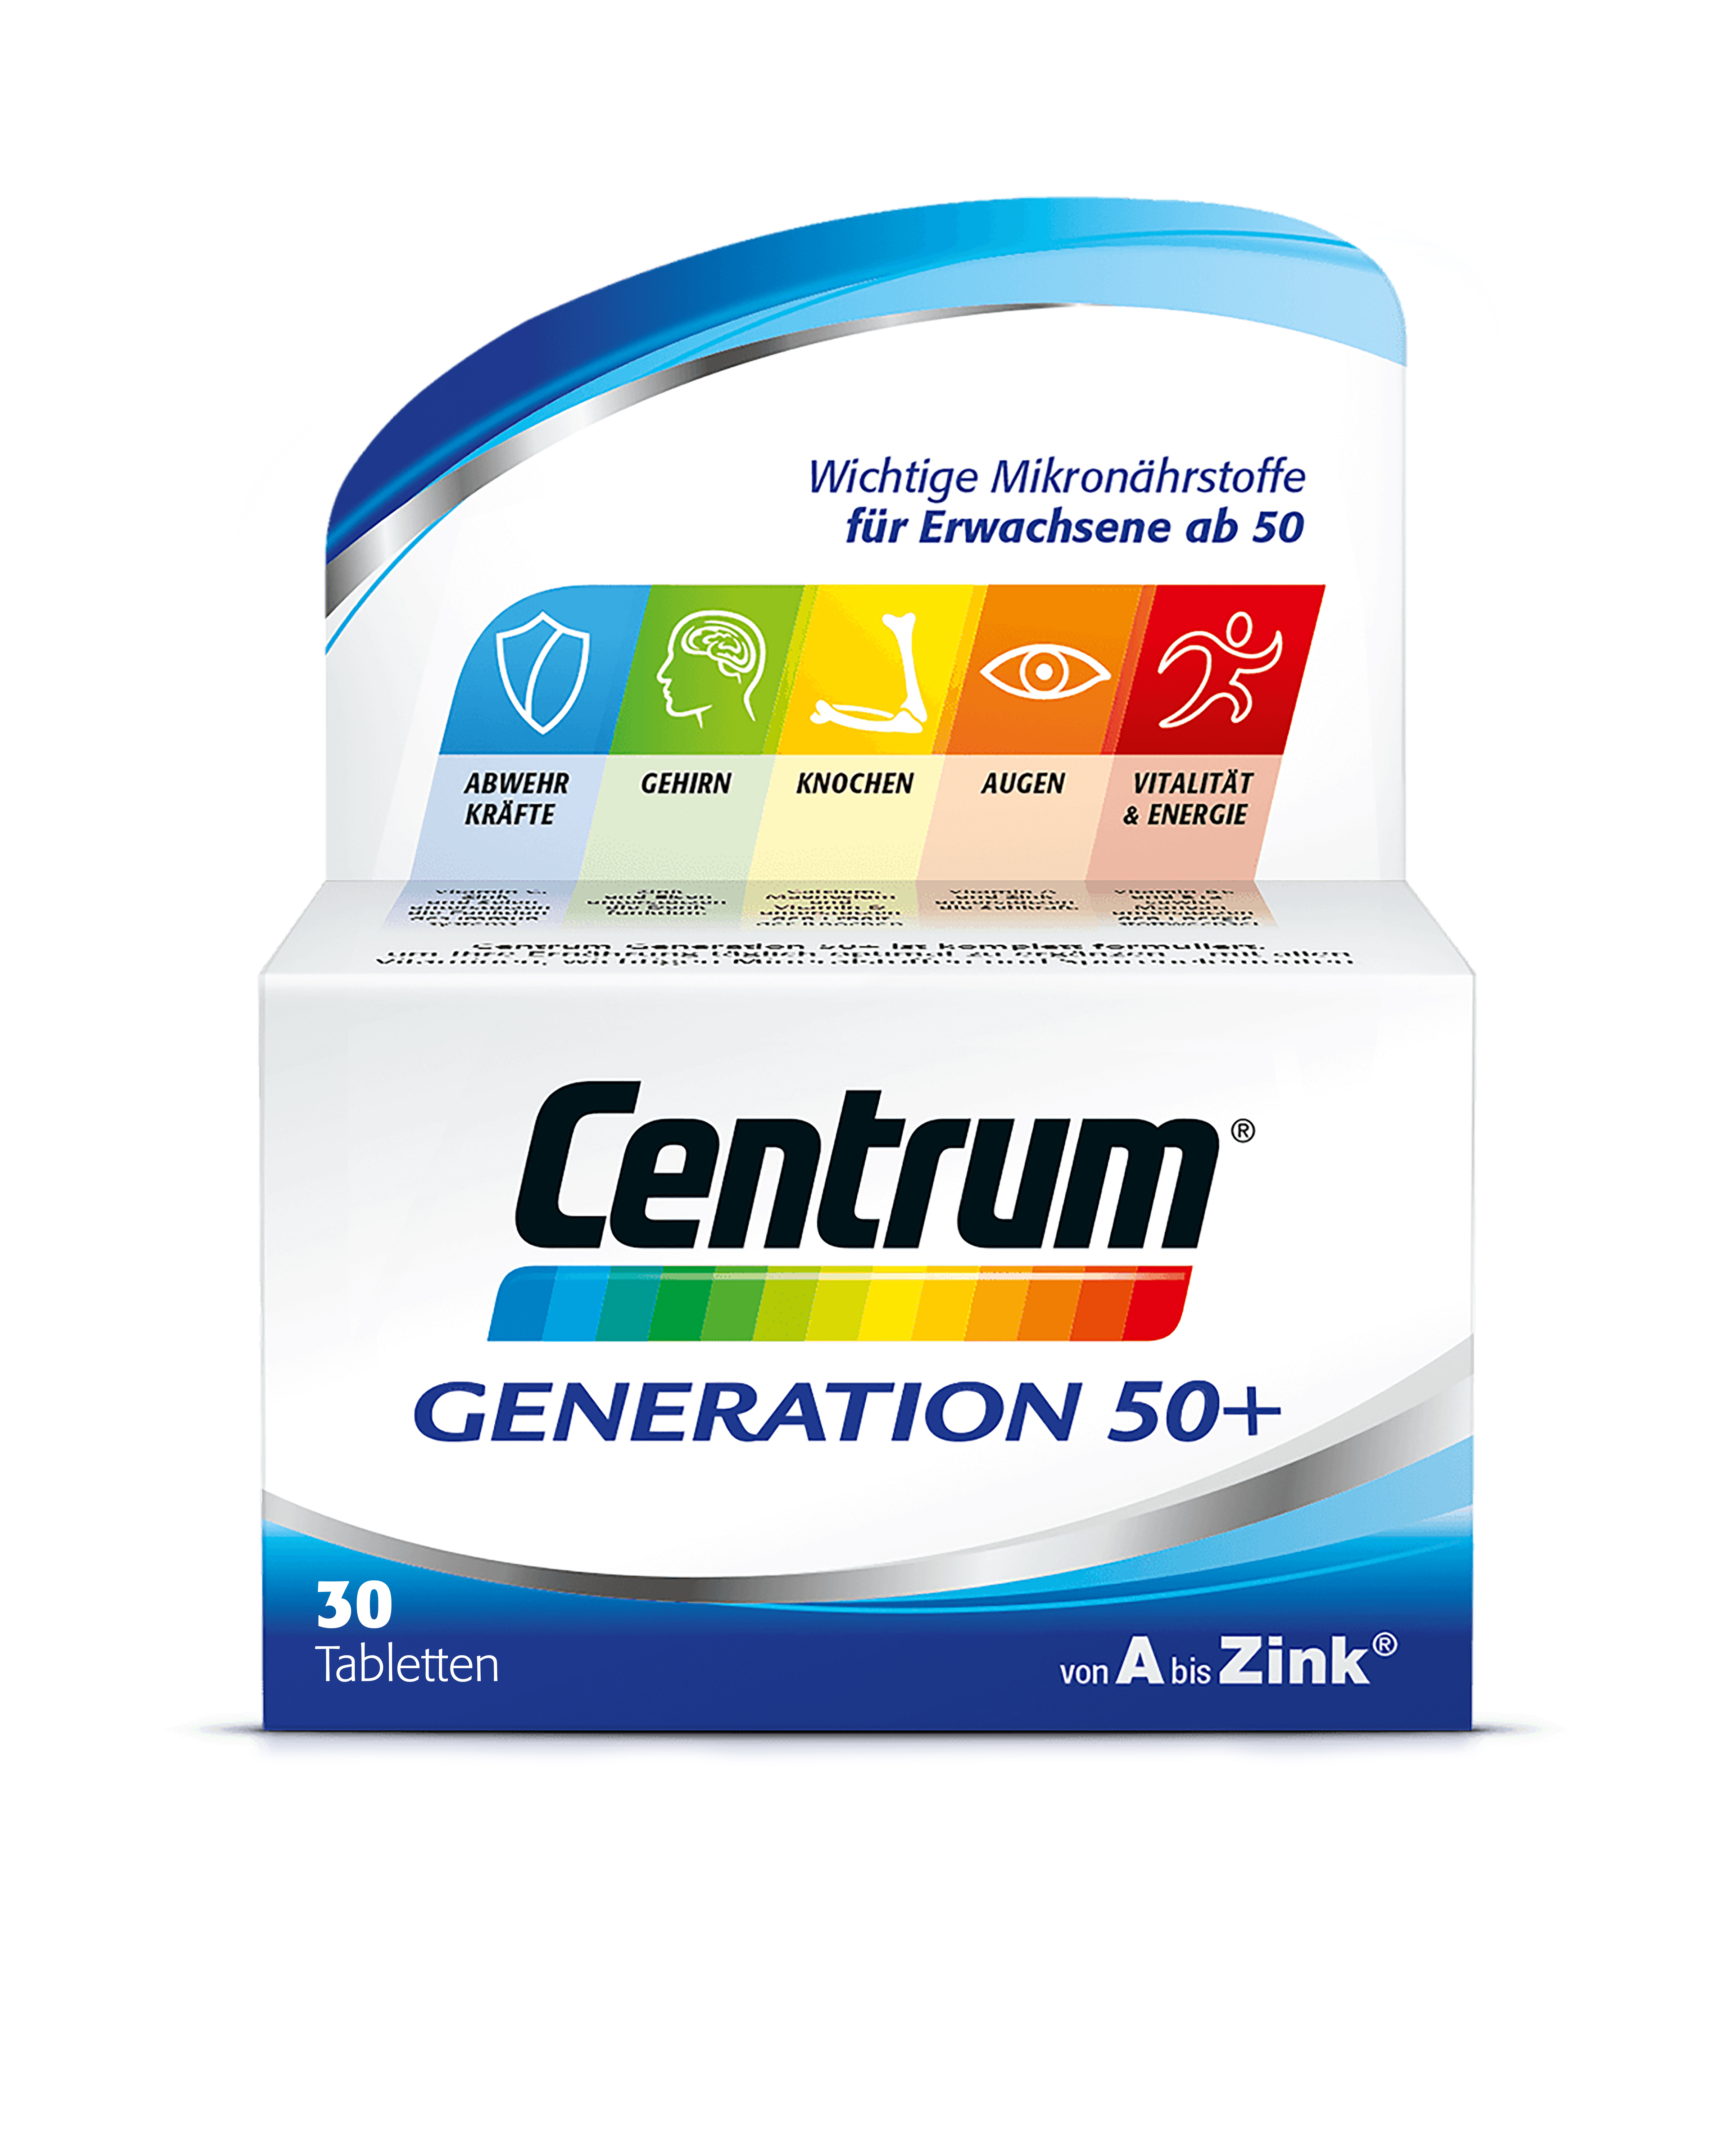 Centrum Generation 50+ von A bis Zink 30 Stk.